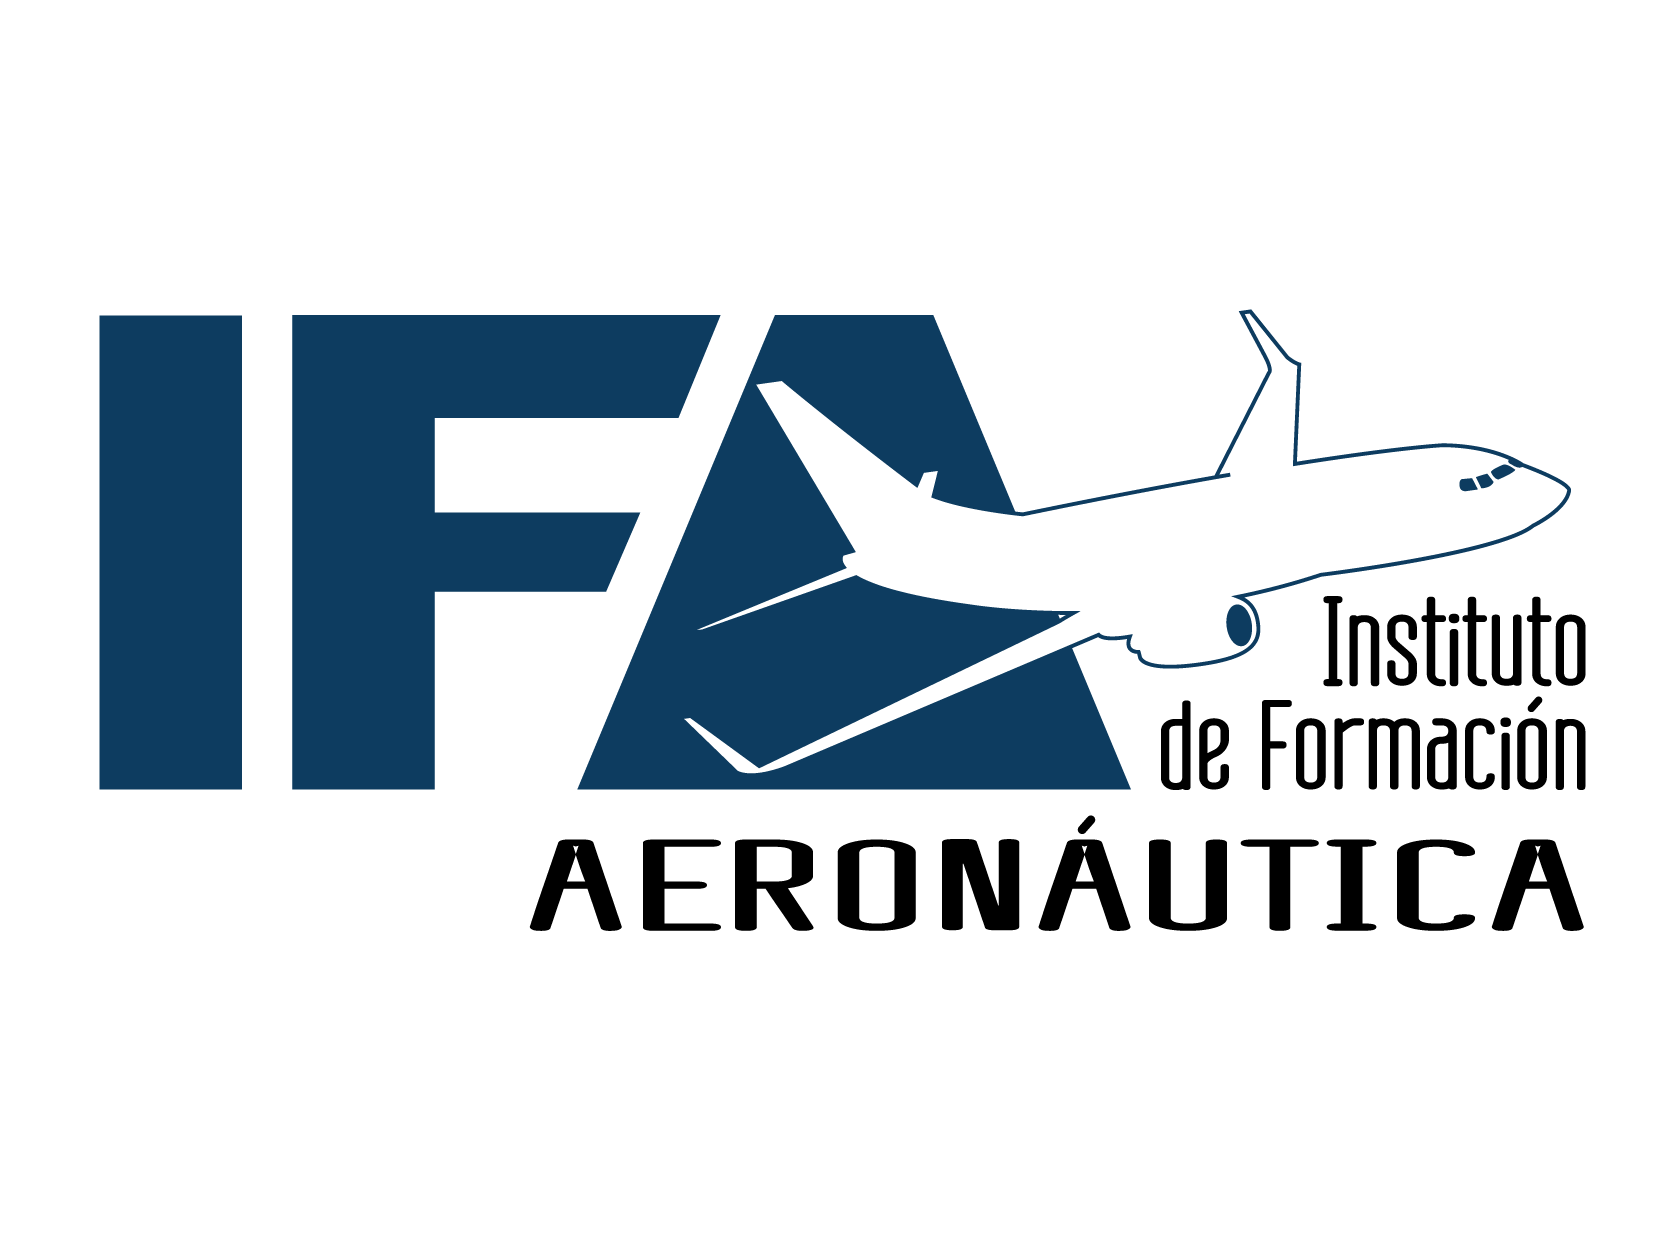 Instituto de Formación Aeronáutica (IFA)